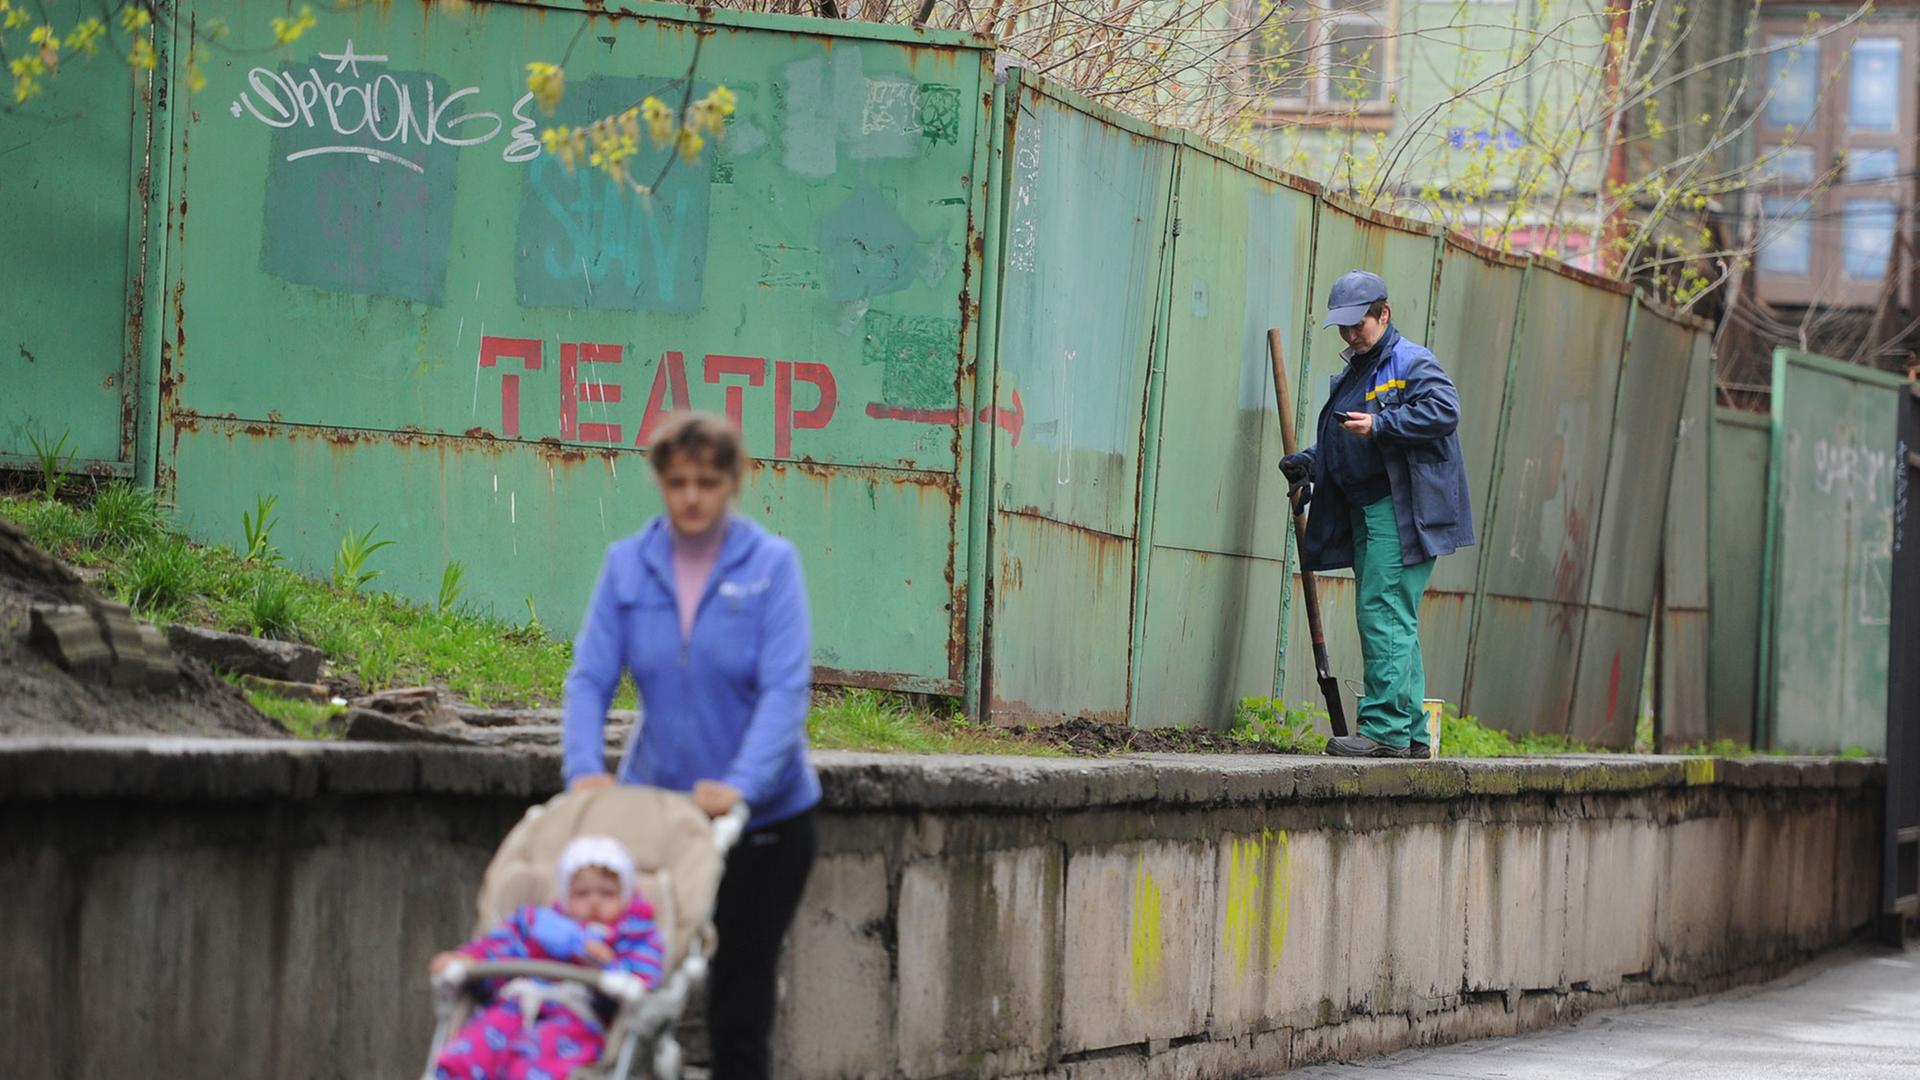 Straßenszene in Kiew - eine Frau geht mit Kinderwagen spazieren, ein Mann reinigt Wände